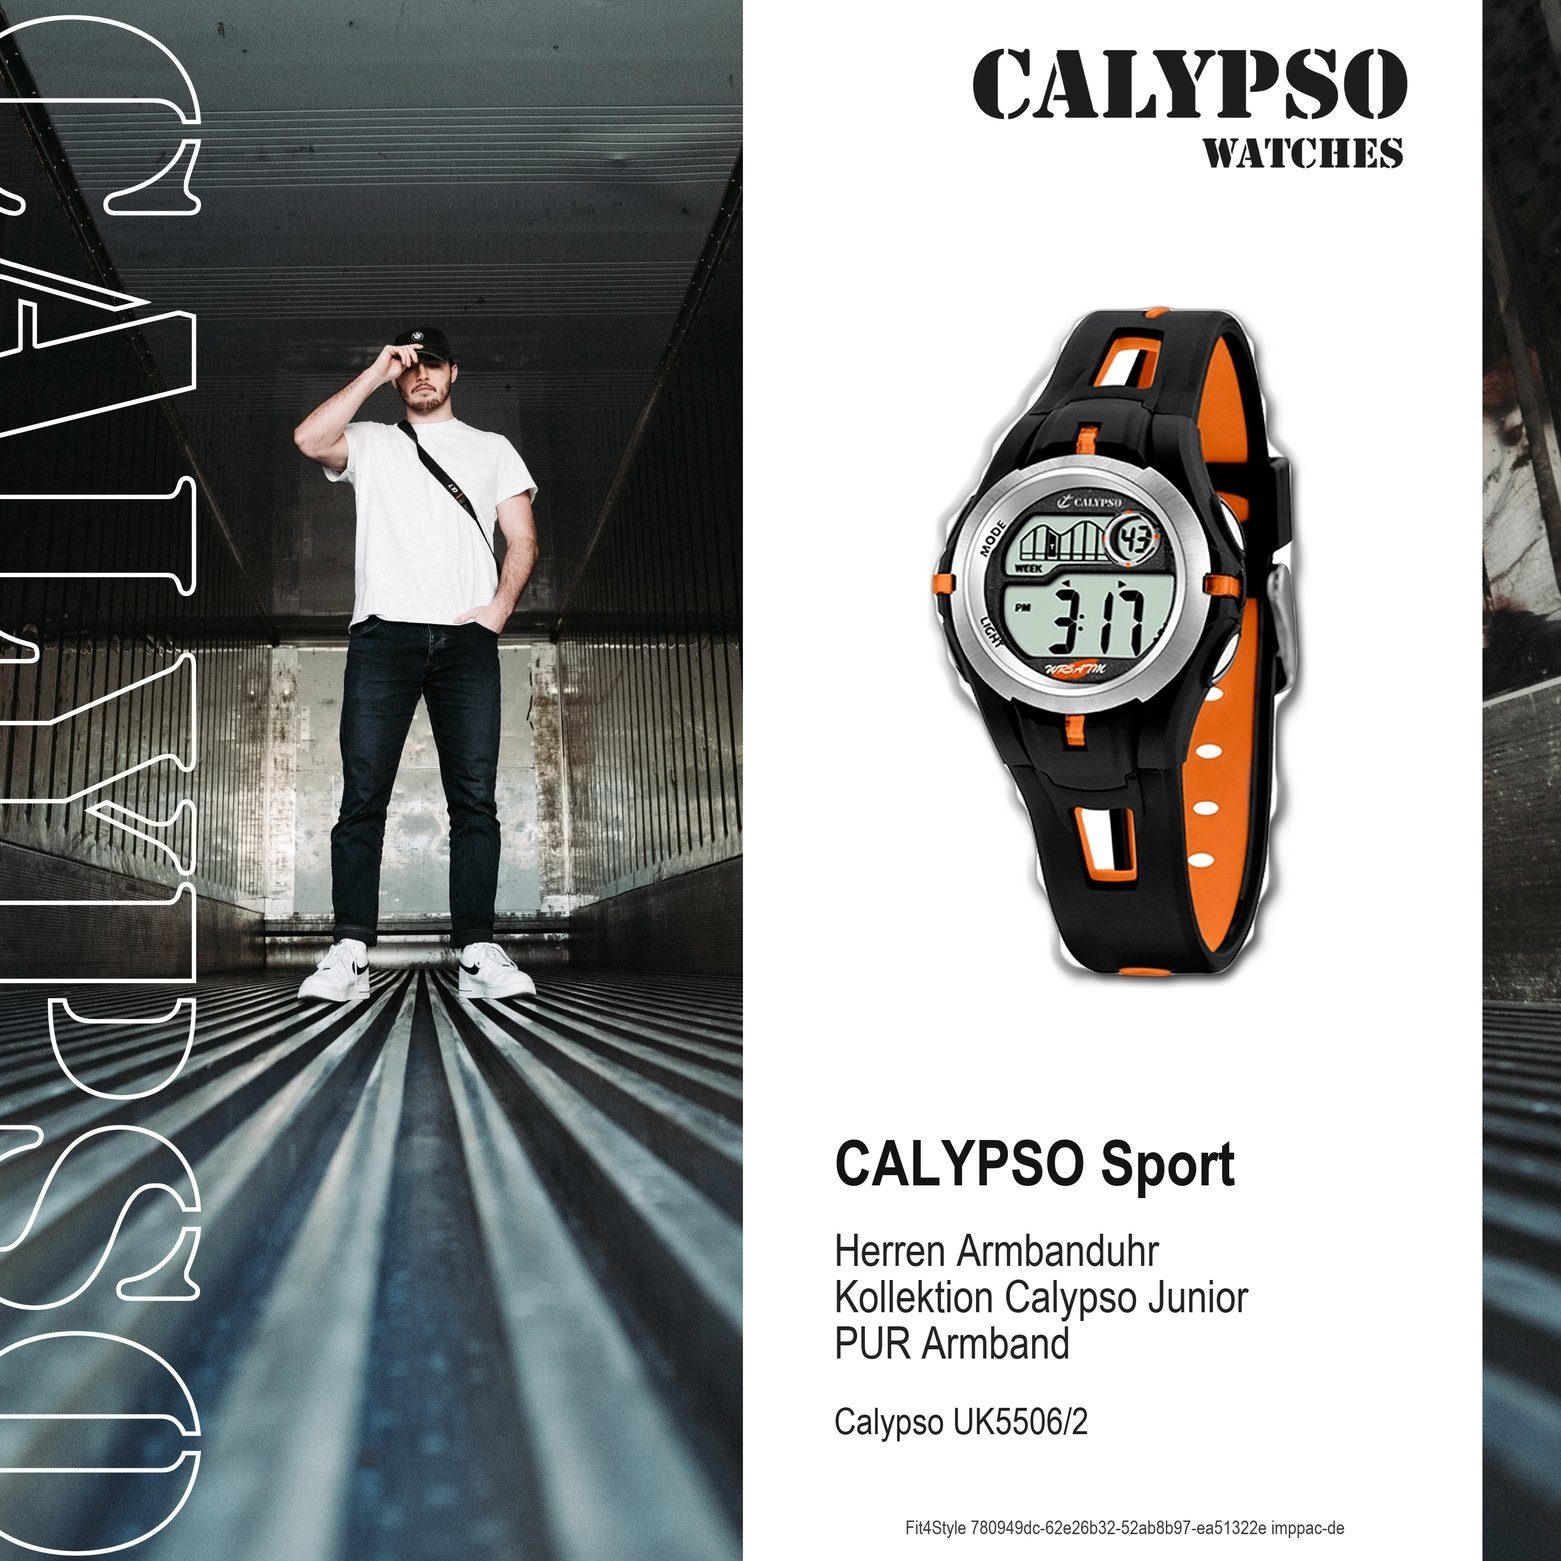 Kunststoffband, Uhr schwarz/orange, Calypso K5506/2 Digitaluhr rund, WATCHES Armbanduhr Herren PURarmband CALYPSO Jugend Sport